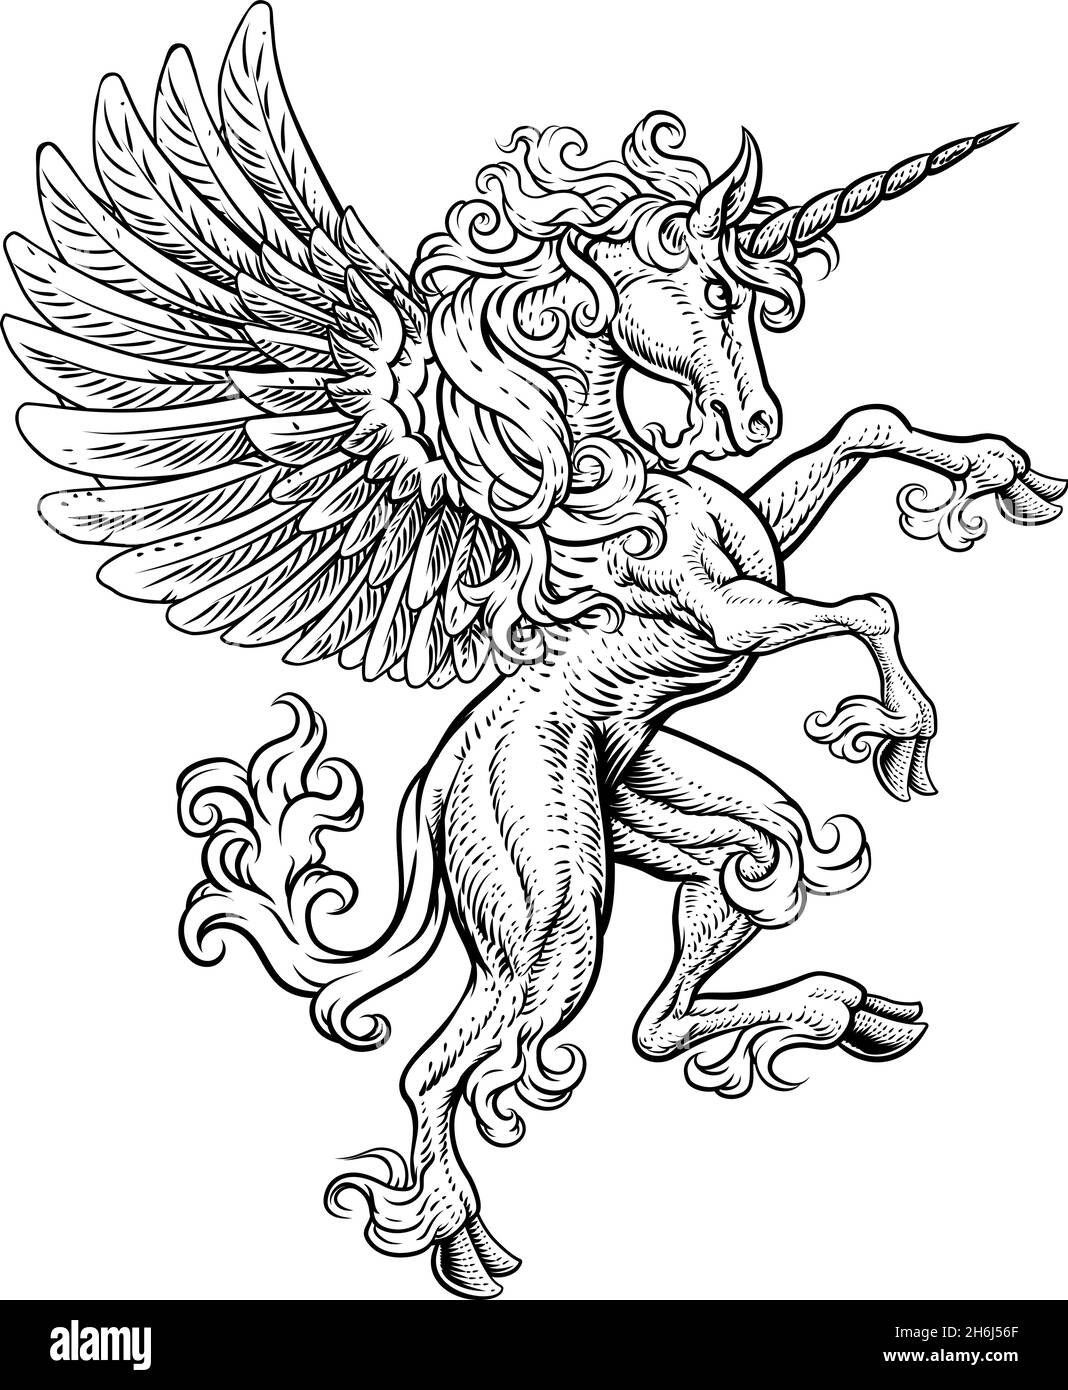 Pegasus Einhorn Aufzucht Grassierende Crest Wings Horse Stock Vektor